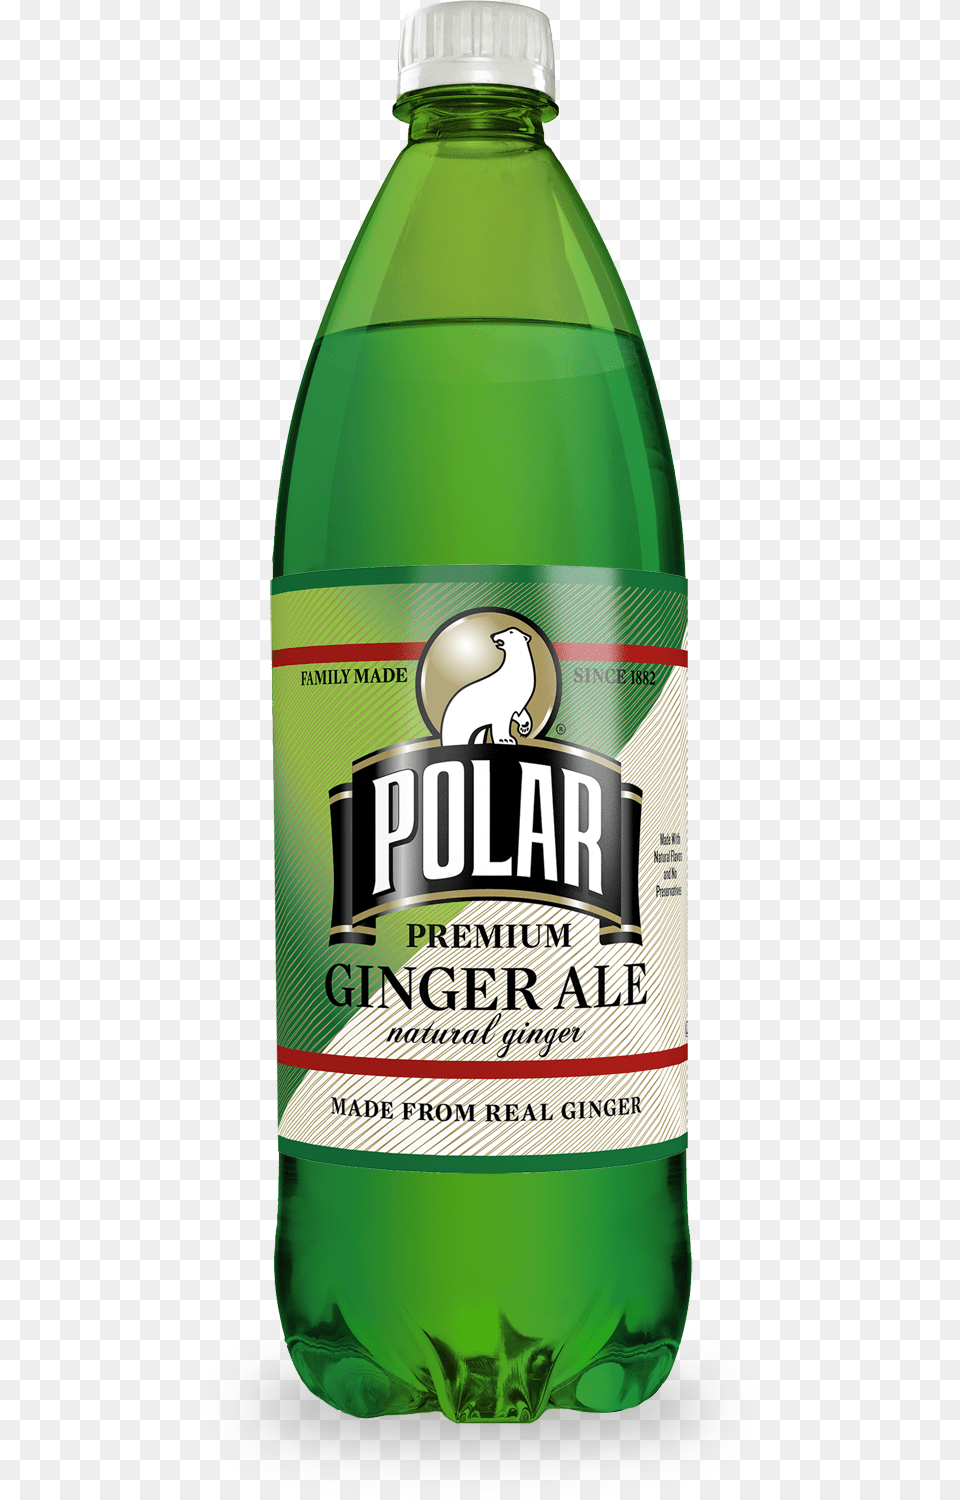 Polar Ginger Ale 1 Liter, Bottle, Alcohol, Beer, Beverage Free Png Download